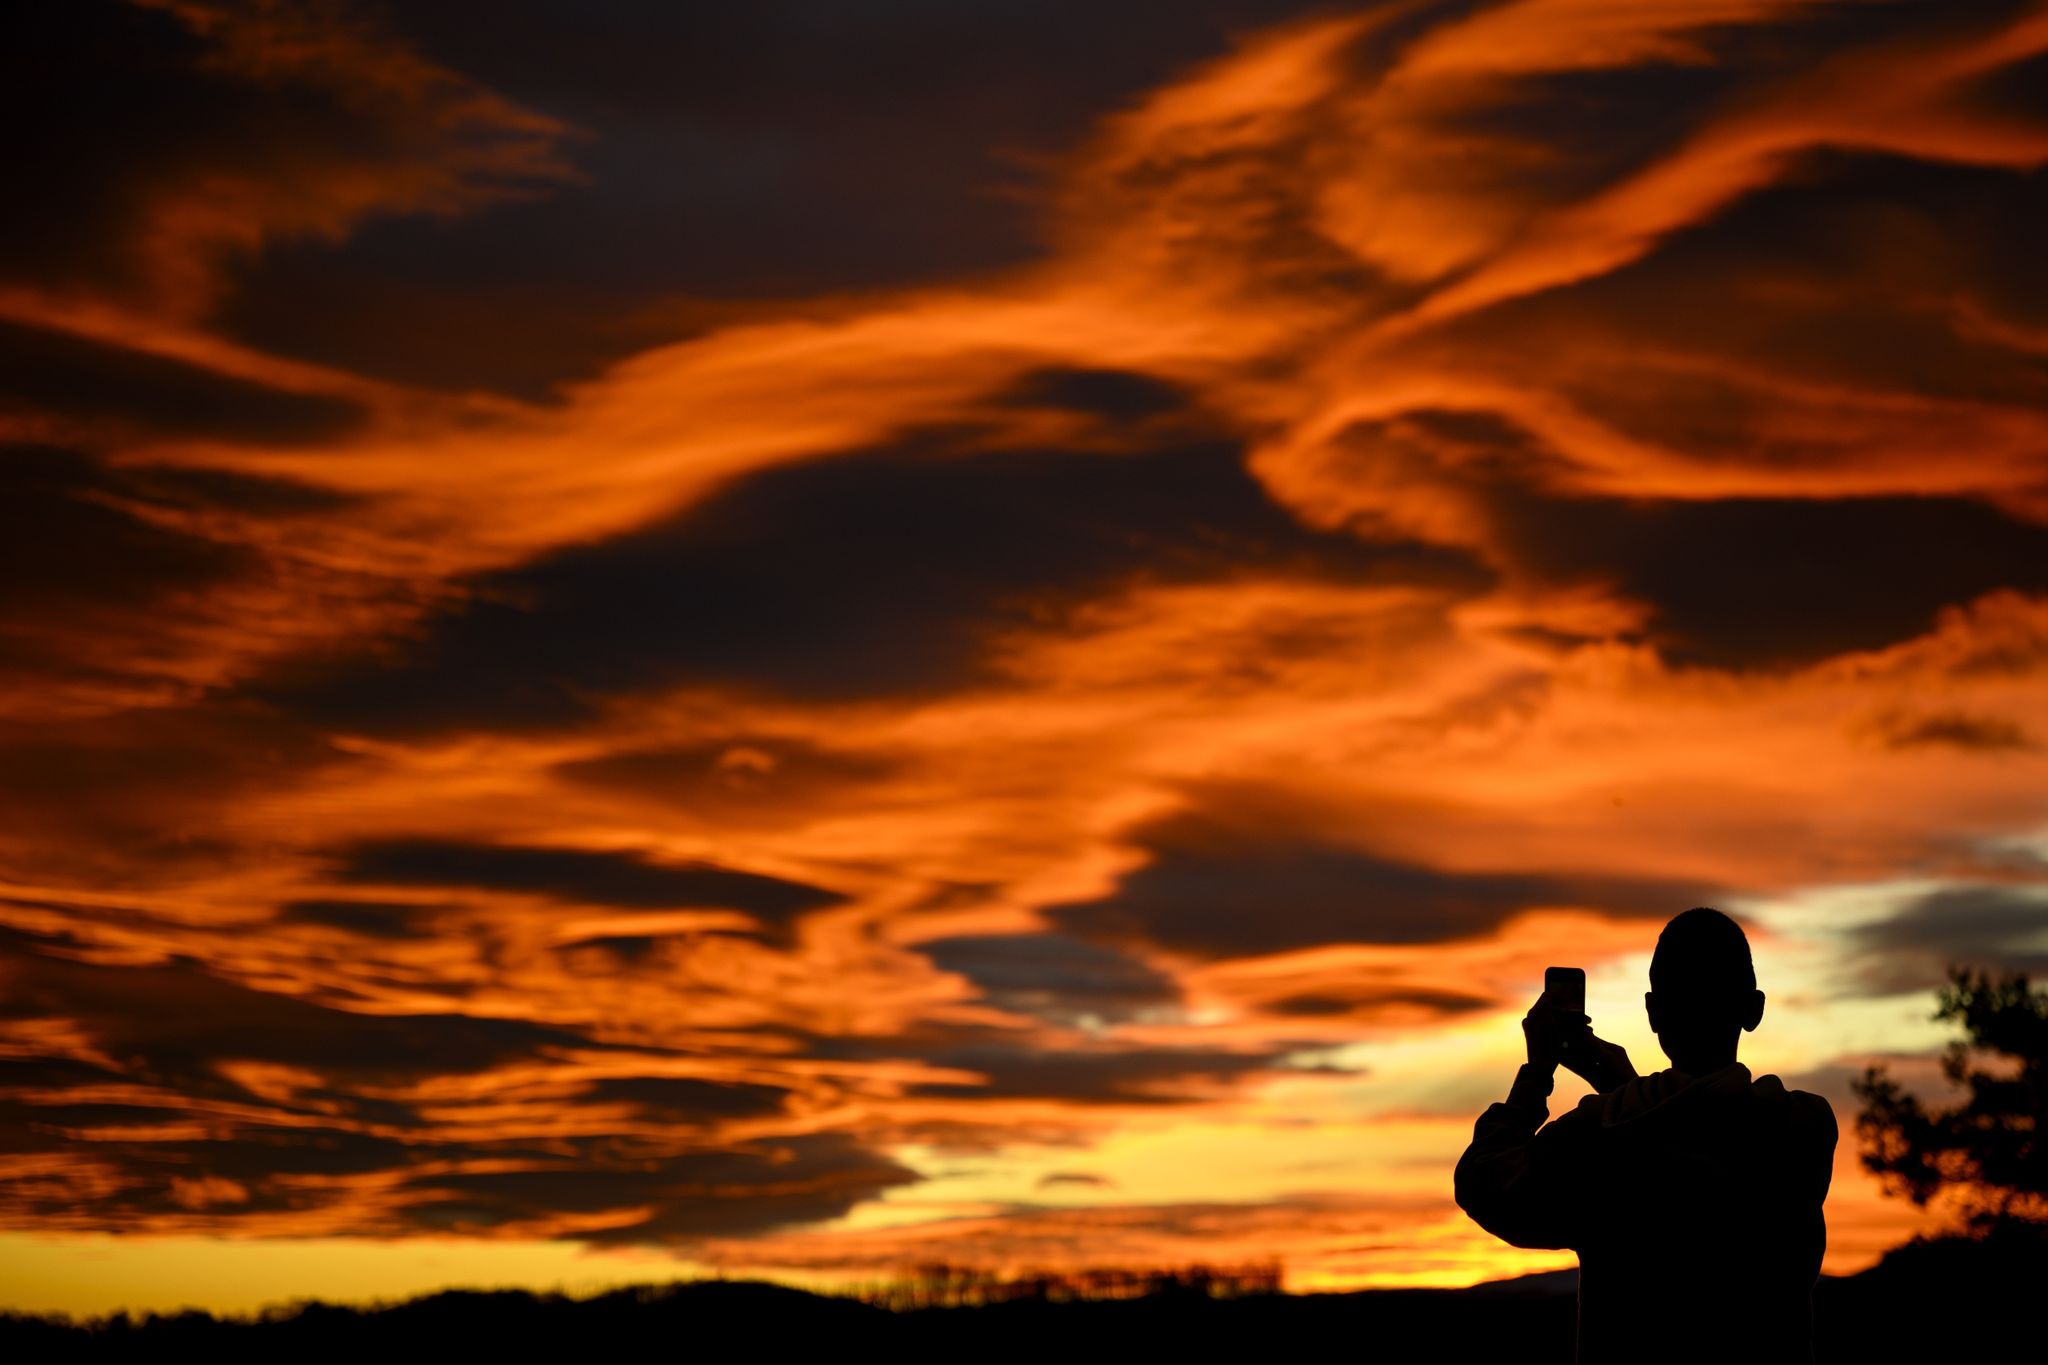 Das Naturschauspiel festhalten: Ein Mann fotografiert einen Sonnenuntergang.